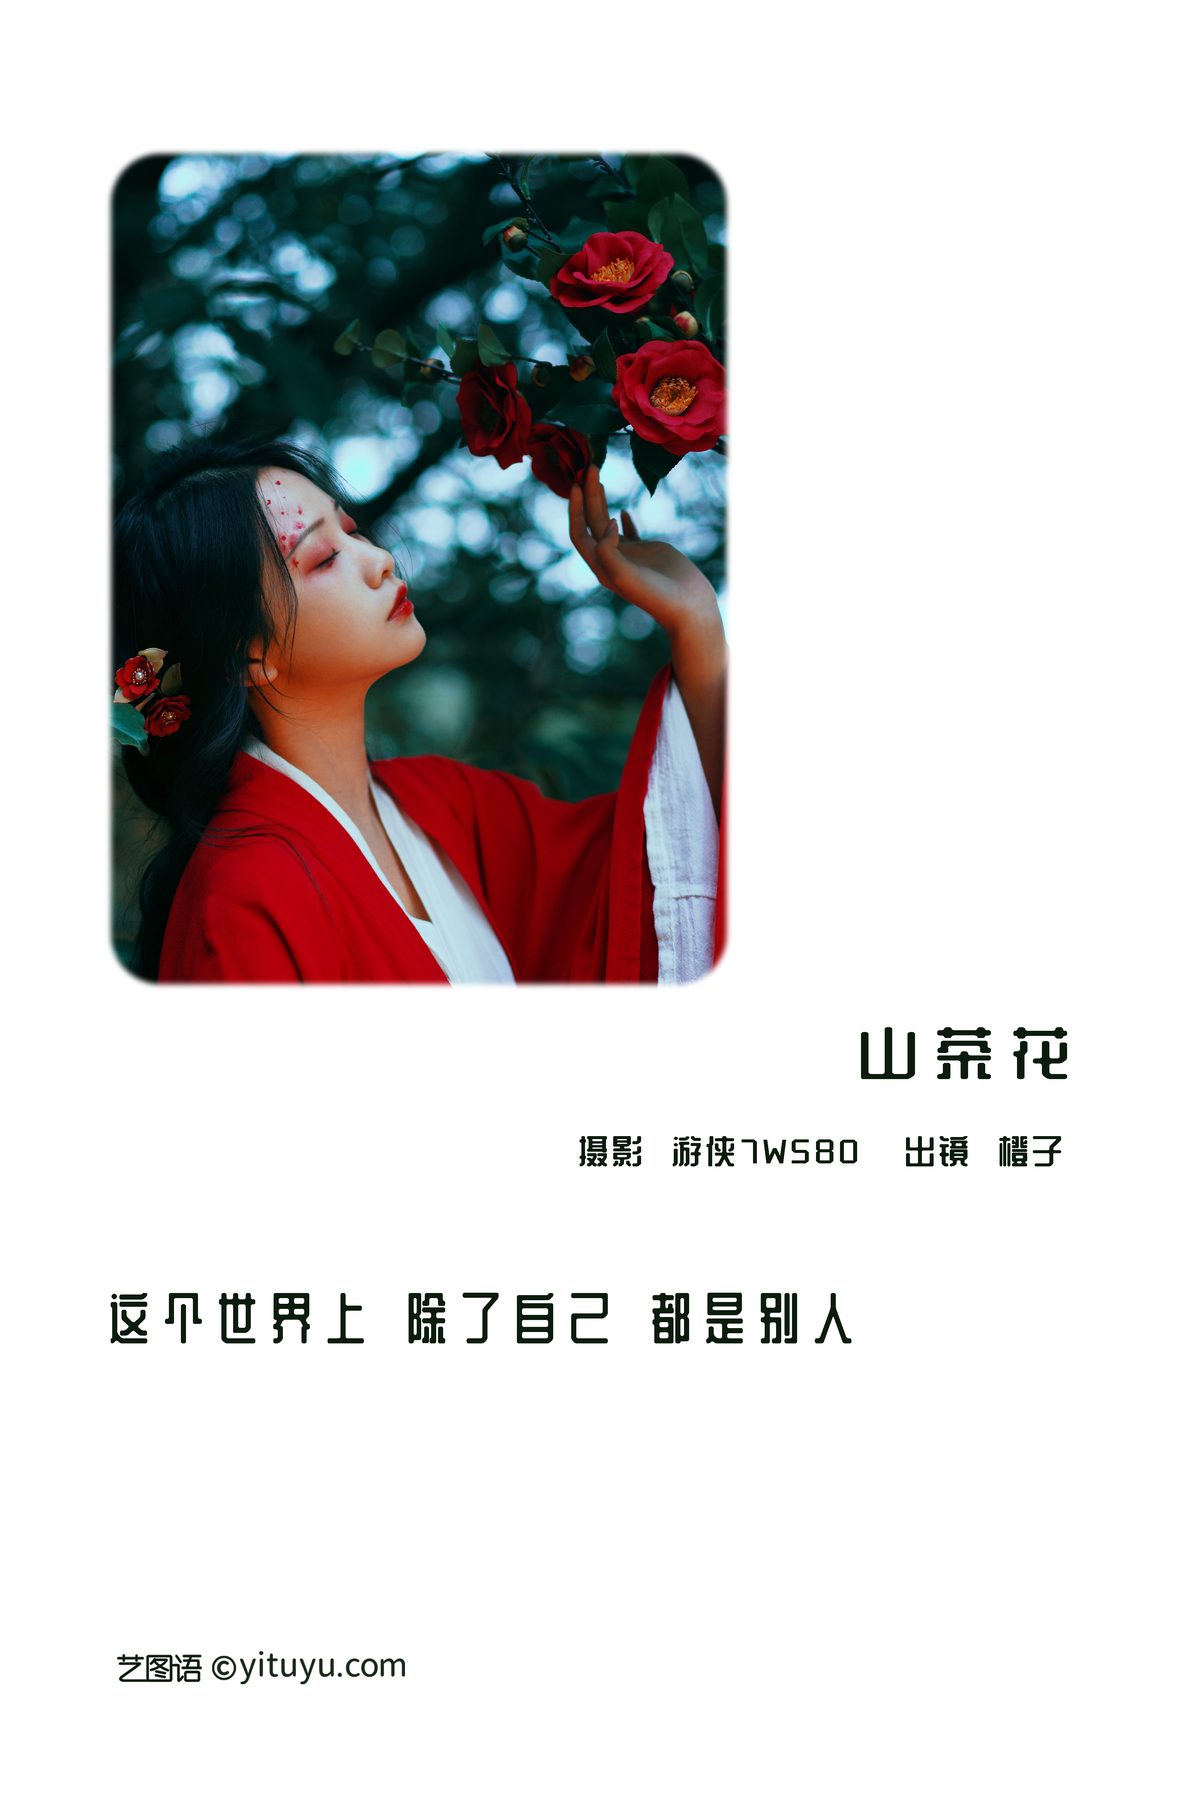 YiTuYu艺图语 Vol 3224 Wang Wang Xiao Xiao Shu 0001 4047951710.jpg